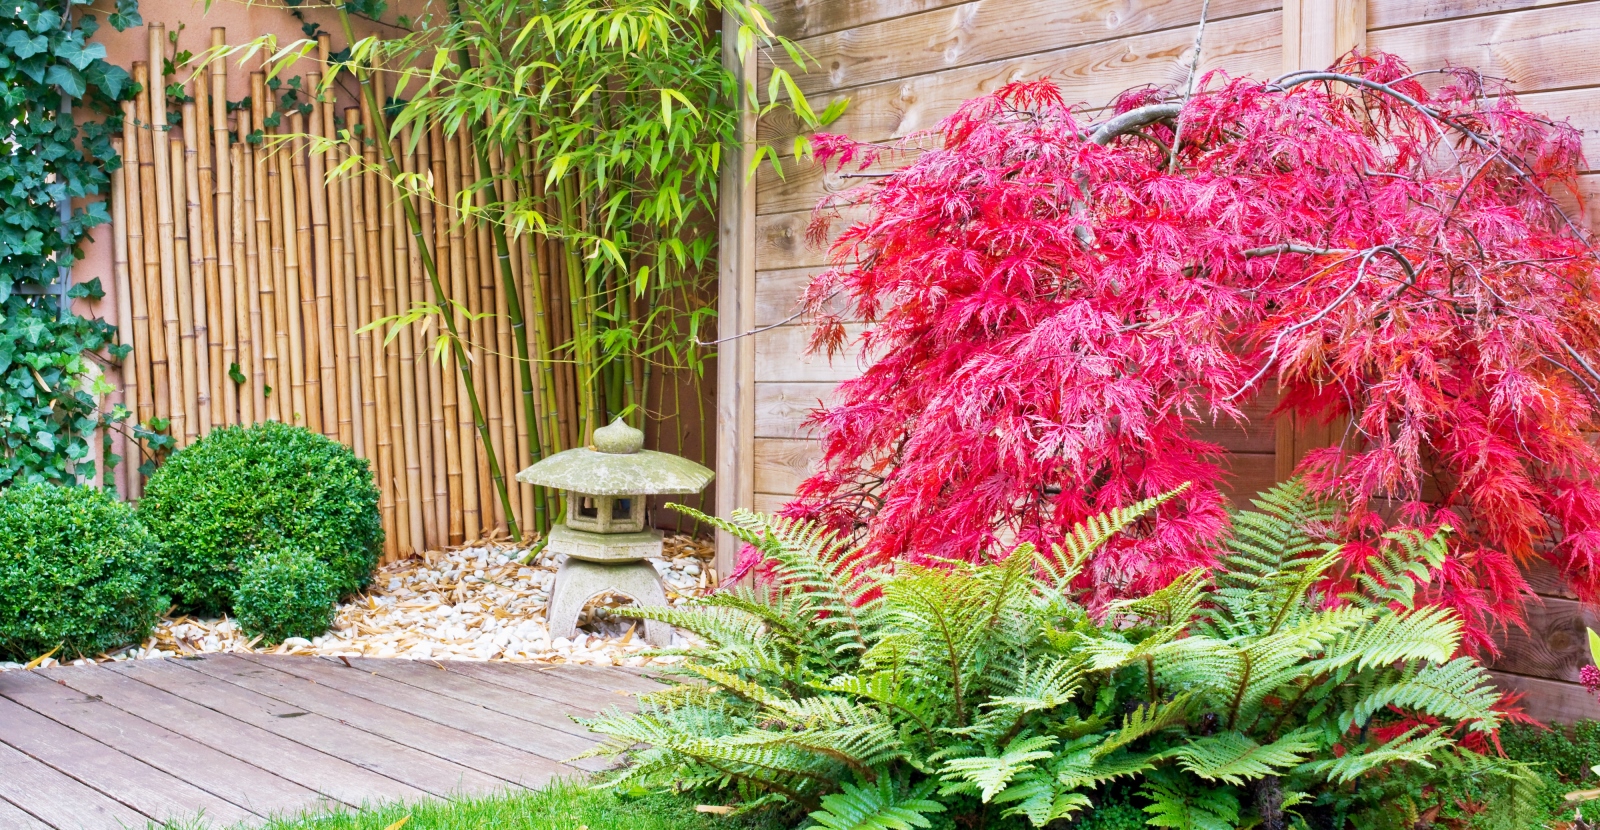 A Mini Zen Garden with Bamboo